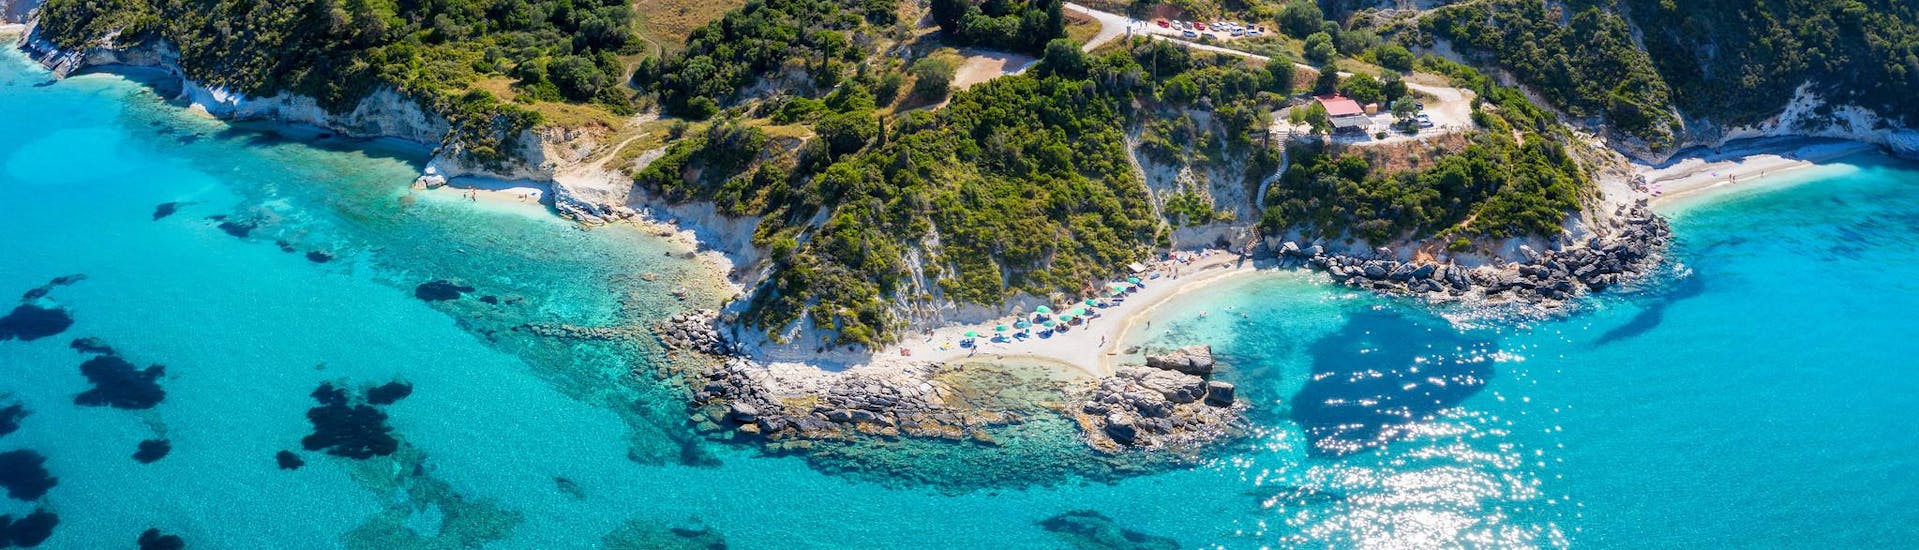 Vista aerea della spiaggia di Xigia, una splendida località per le gite in barca a Zante.